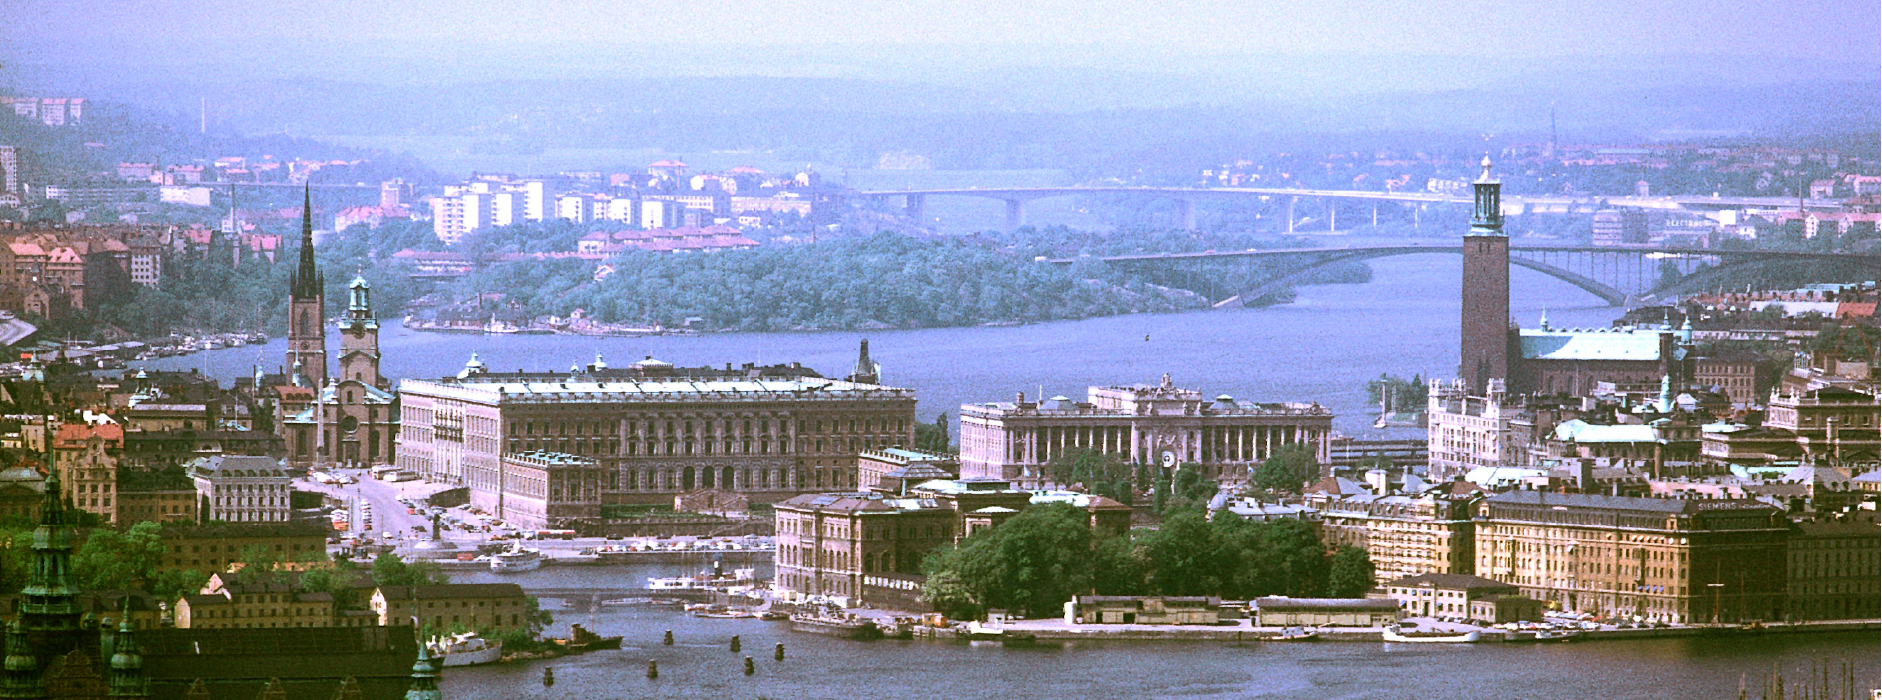 El edificio Folkets Hus (centro) en Estocolmo, Suecia.